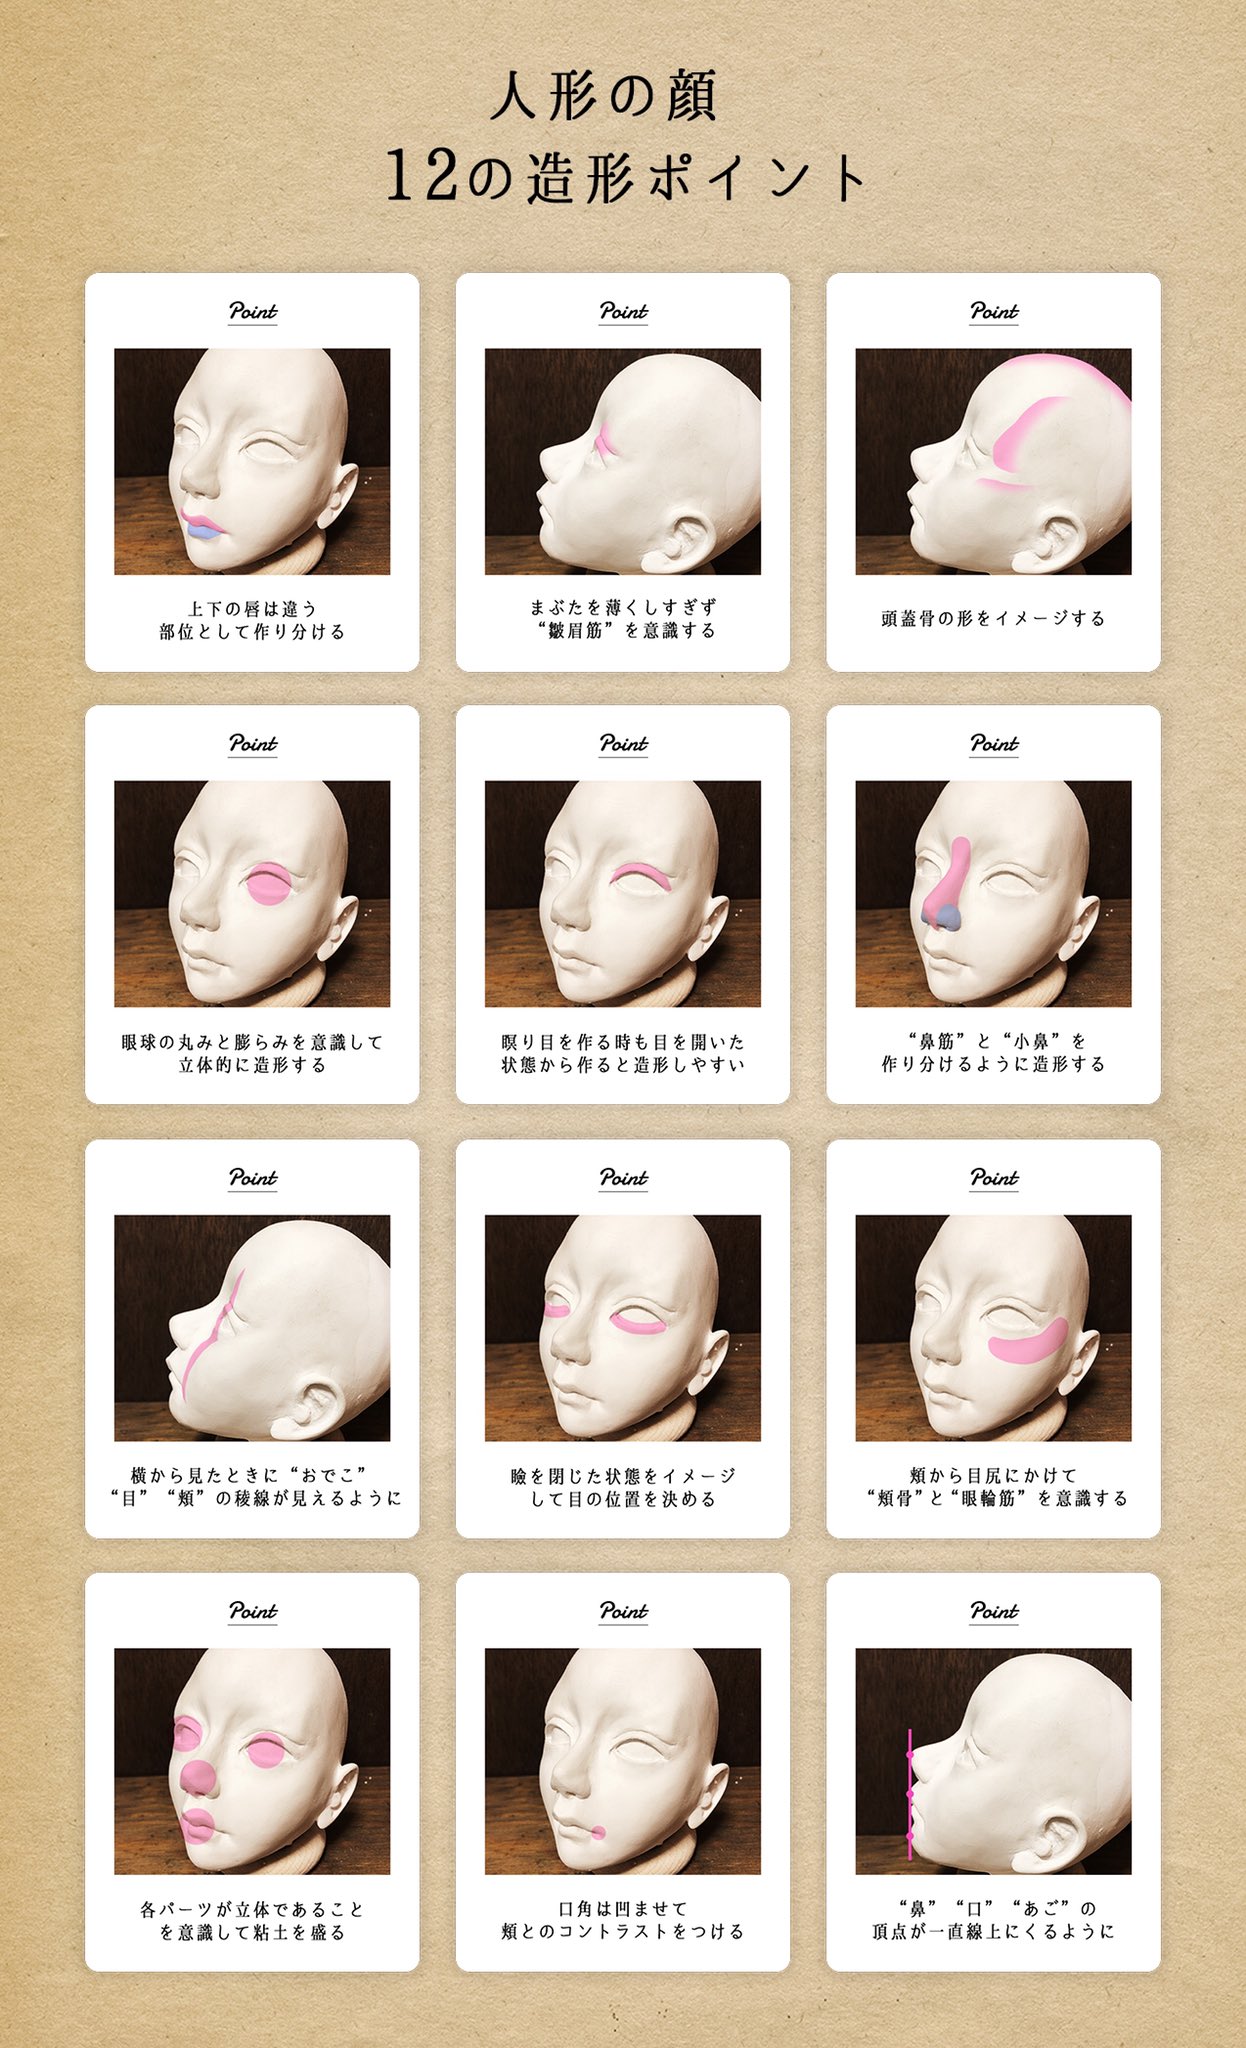 奥田拓郎 バロン人形制作 人形の顔の造形で気づいたコツ的なものをまとめました これを意識すると立体的な顔になります 人形やフィギュア造形の参考に少しでもなれば幸いです 動画はこちら T Co 5pnkhegggh 粘土造形 ドール フィギュア